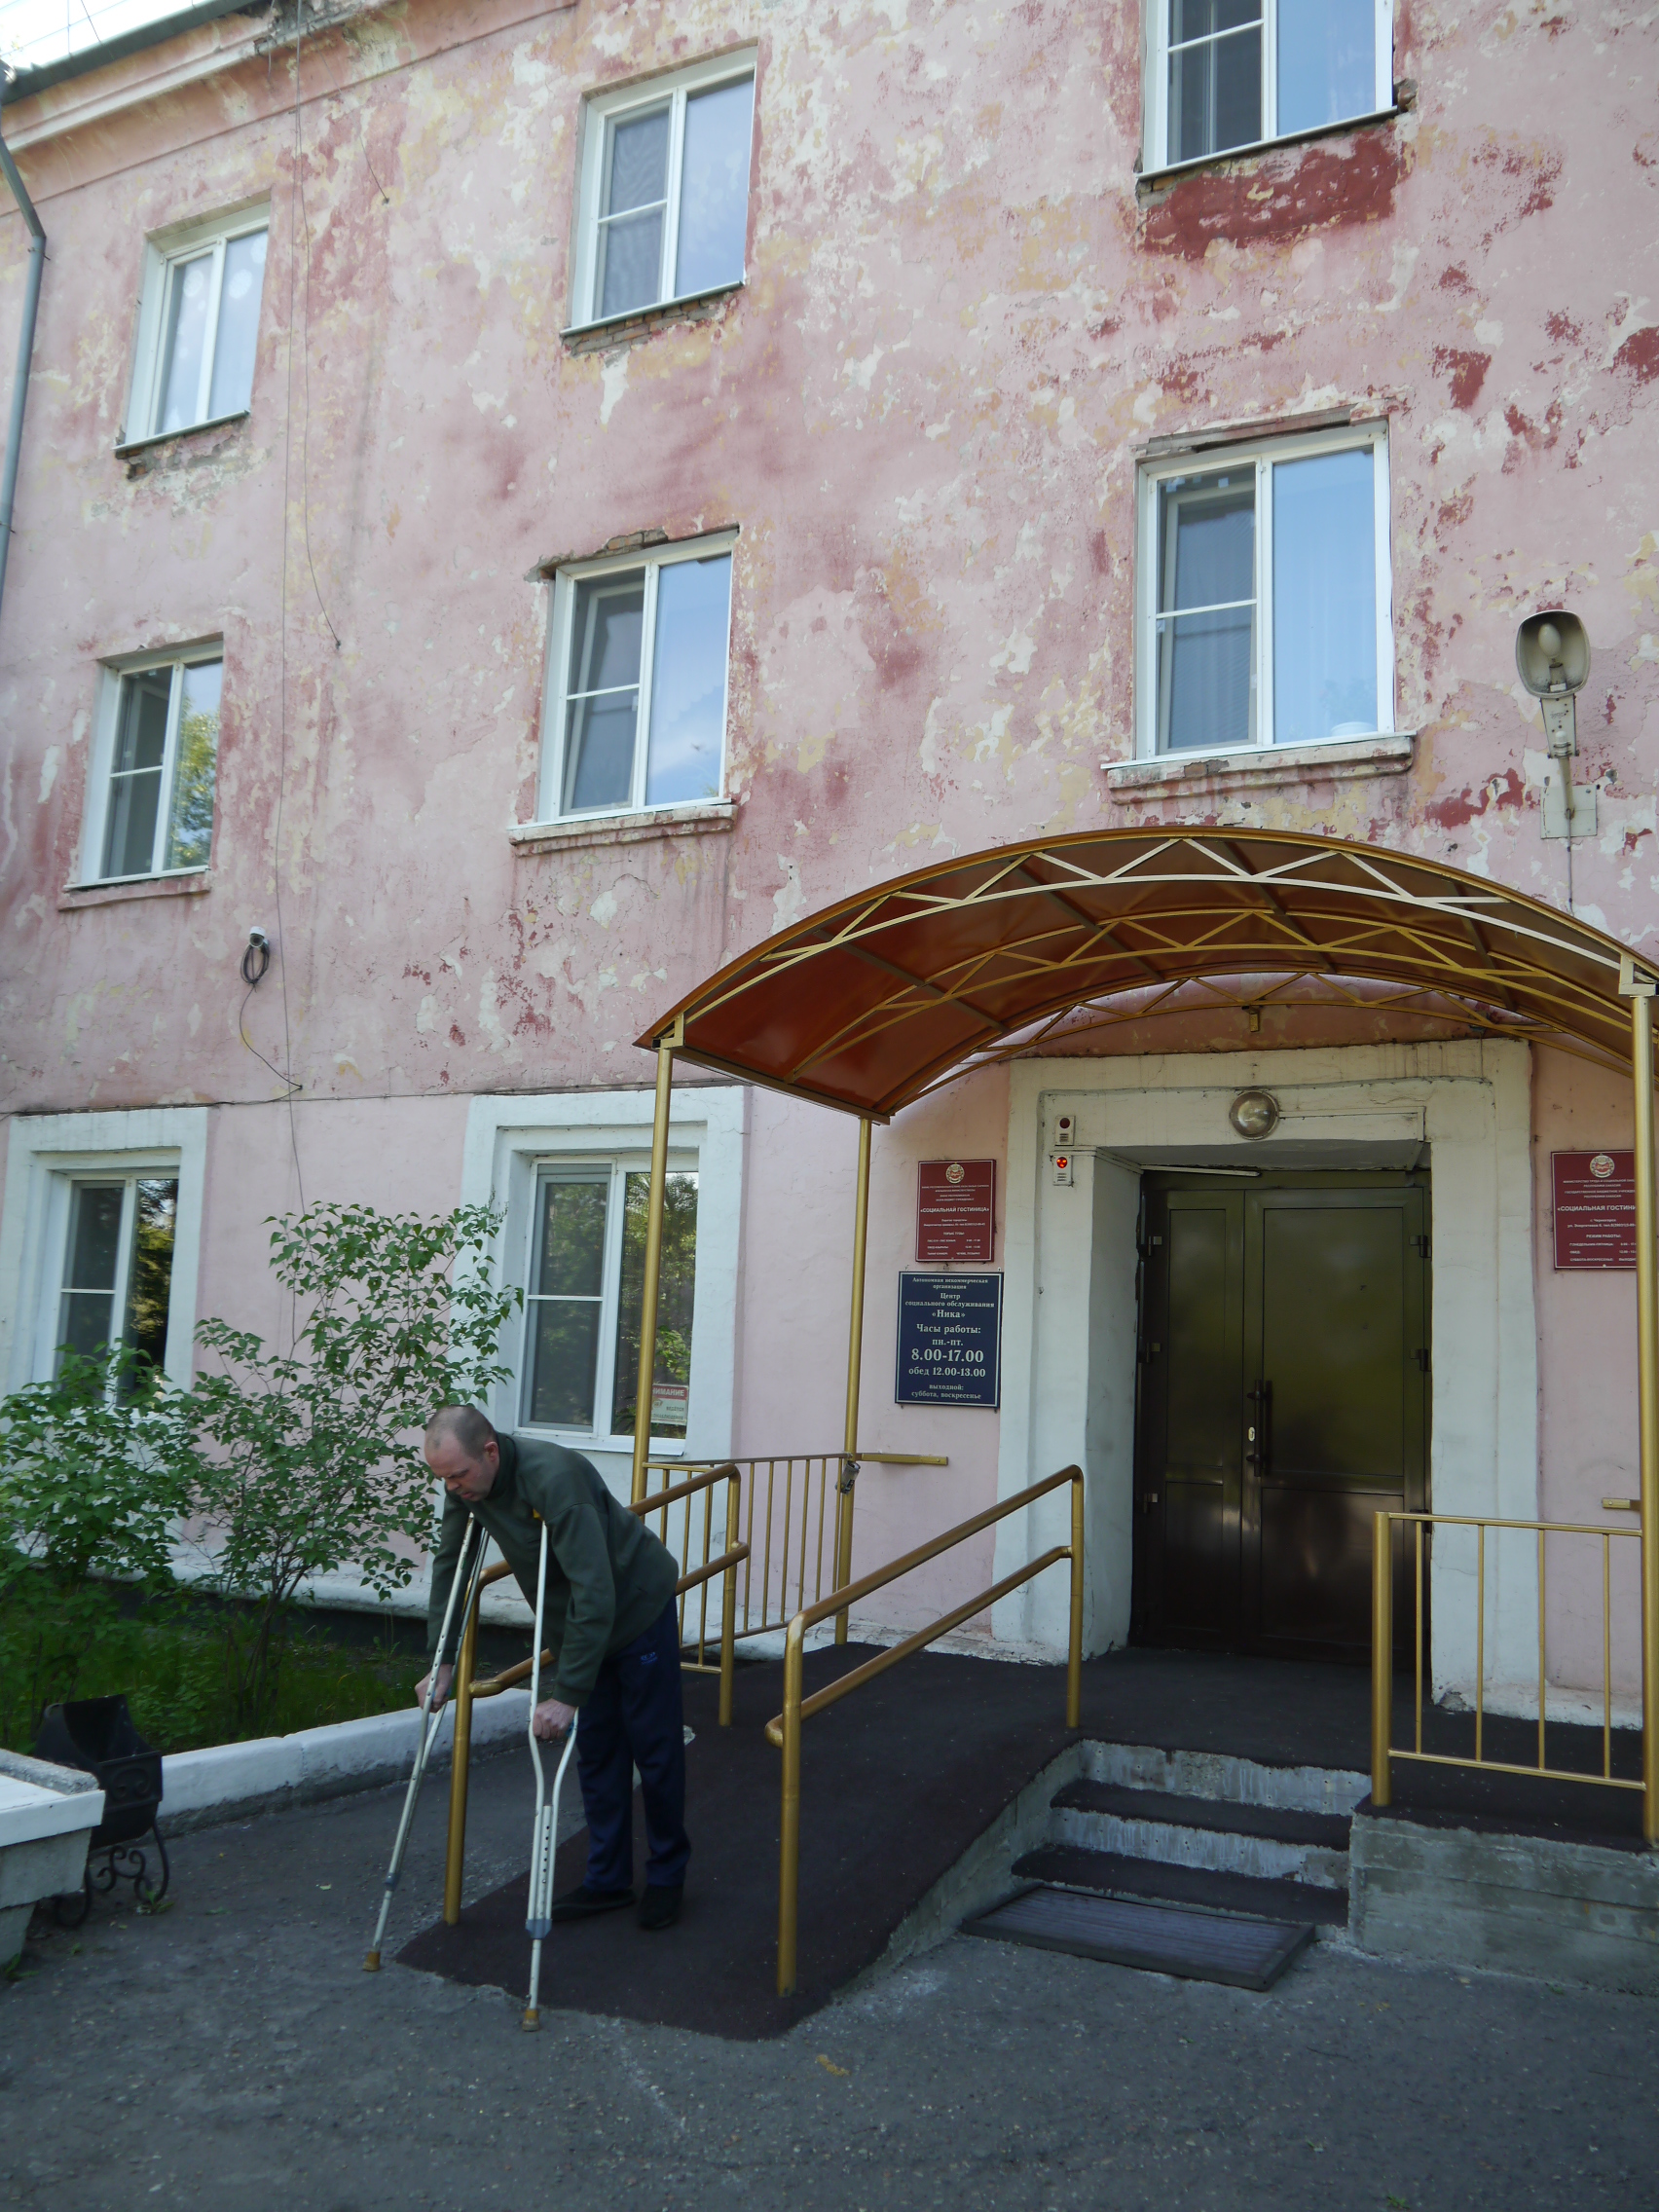 Уполномоченный посетил социальную гостиницу в городе Черногорске